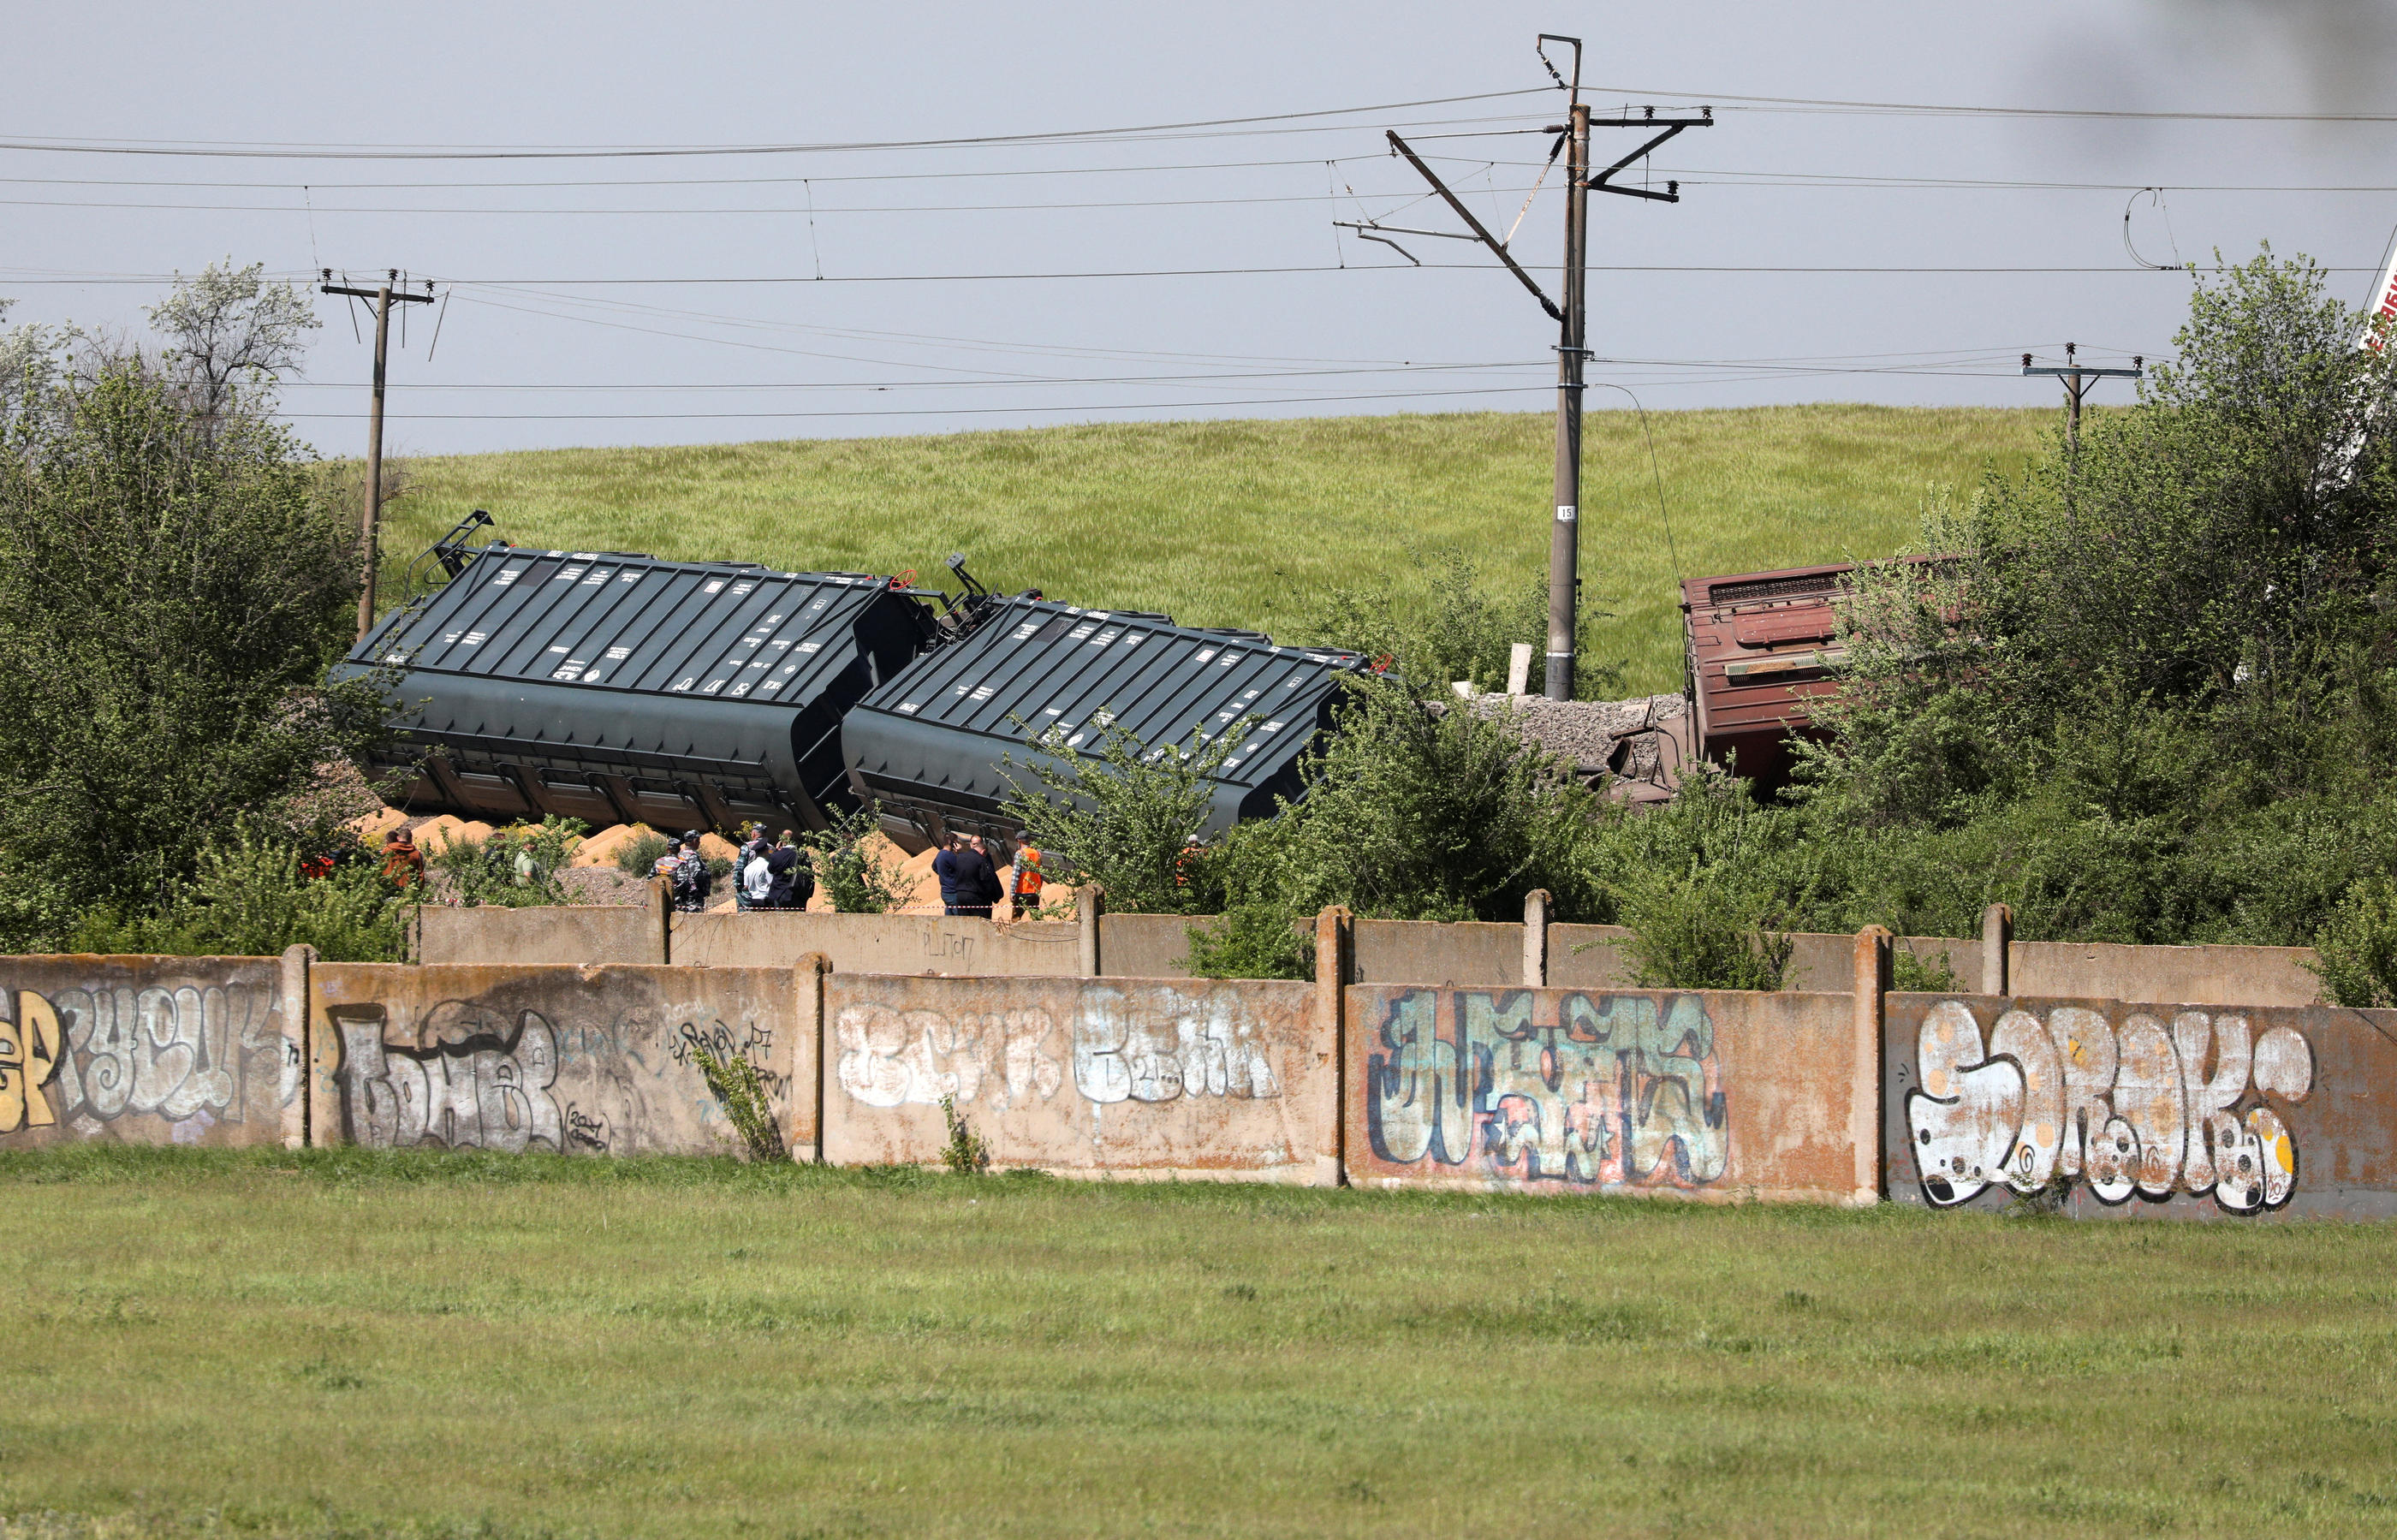 Le déraillement du train de marchandises n'a pas fait de blessés, selon les autorités russes. REUTERS/Stringer